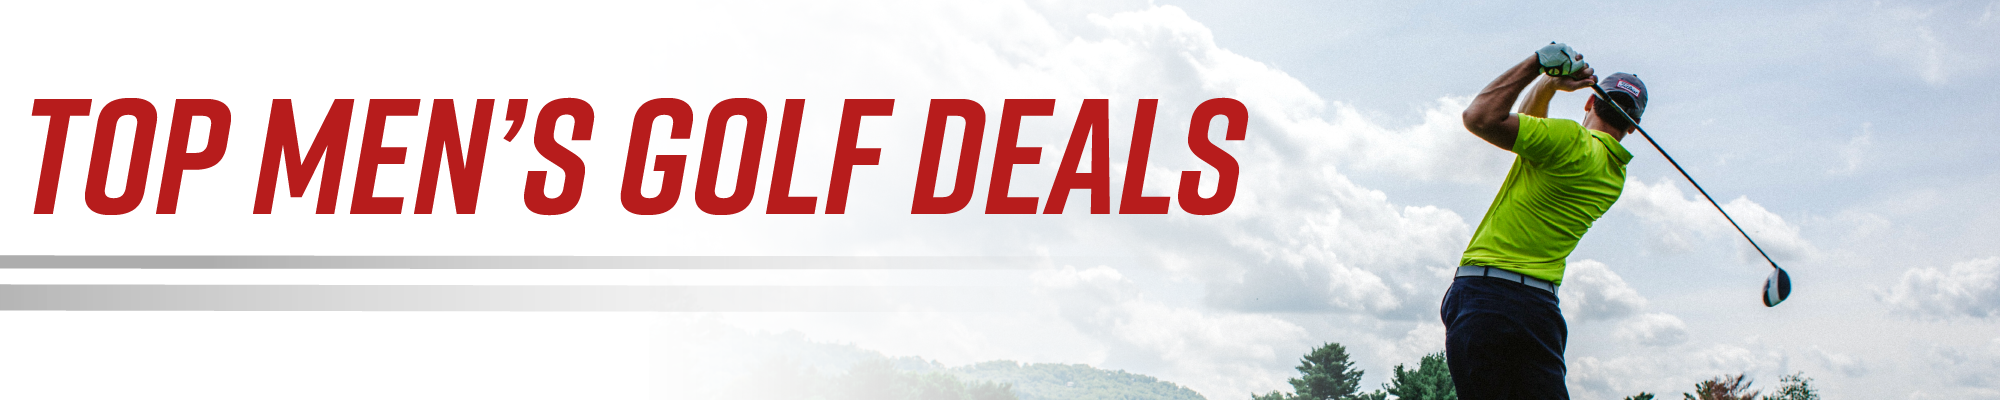 Top Men's Golf Deals